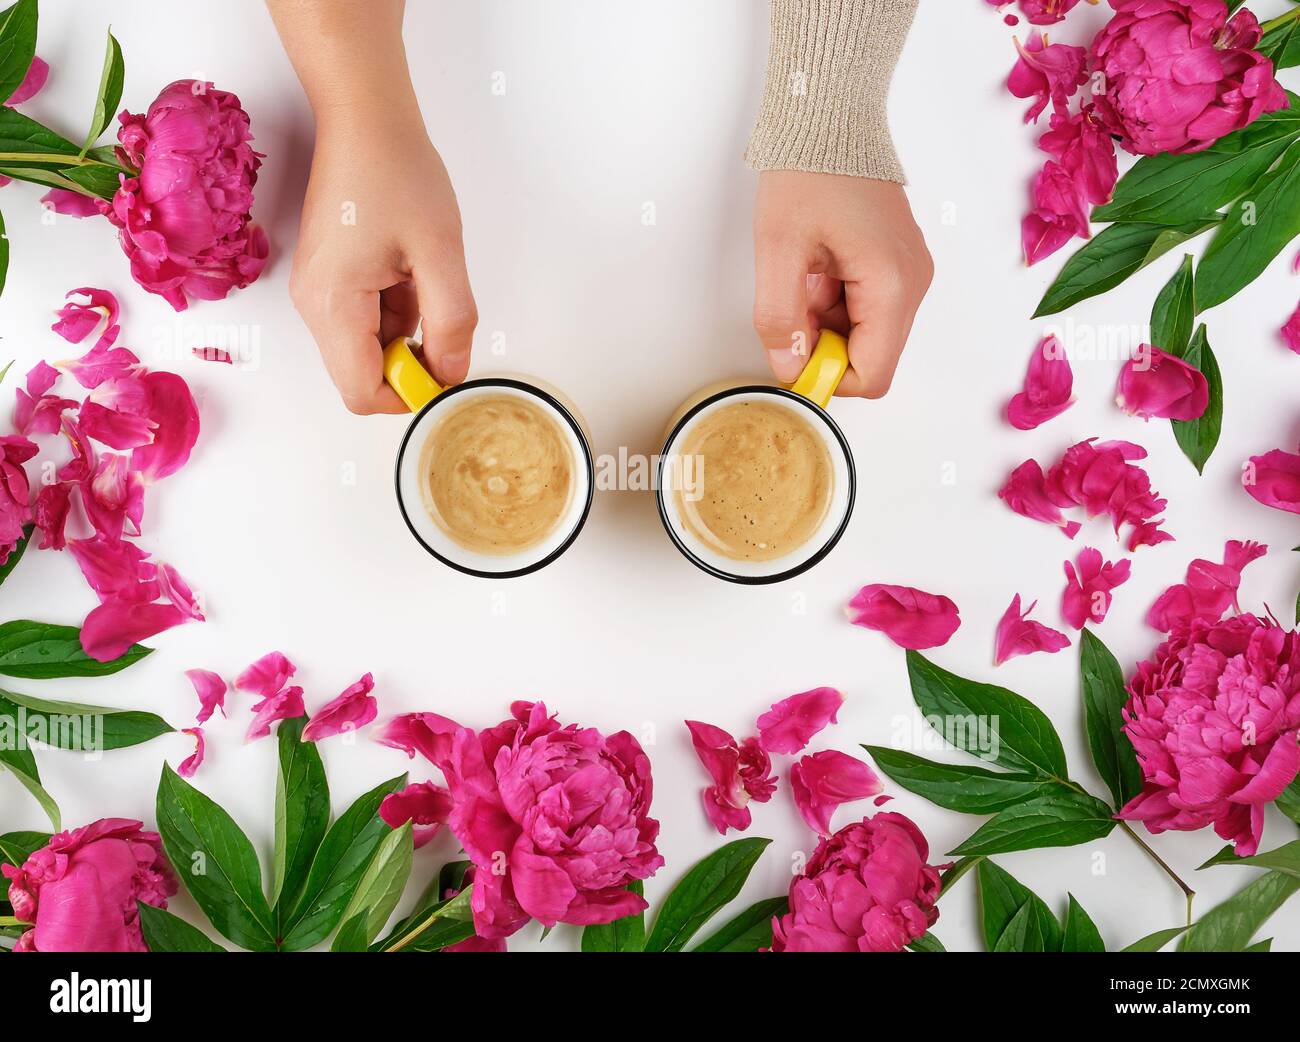 deux mains tenant des tasses jaunes avec une boisson chaude au café sur un fond blanc au milieu de la floraison Banque D'Images